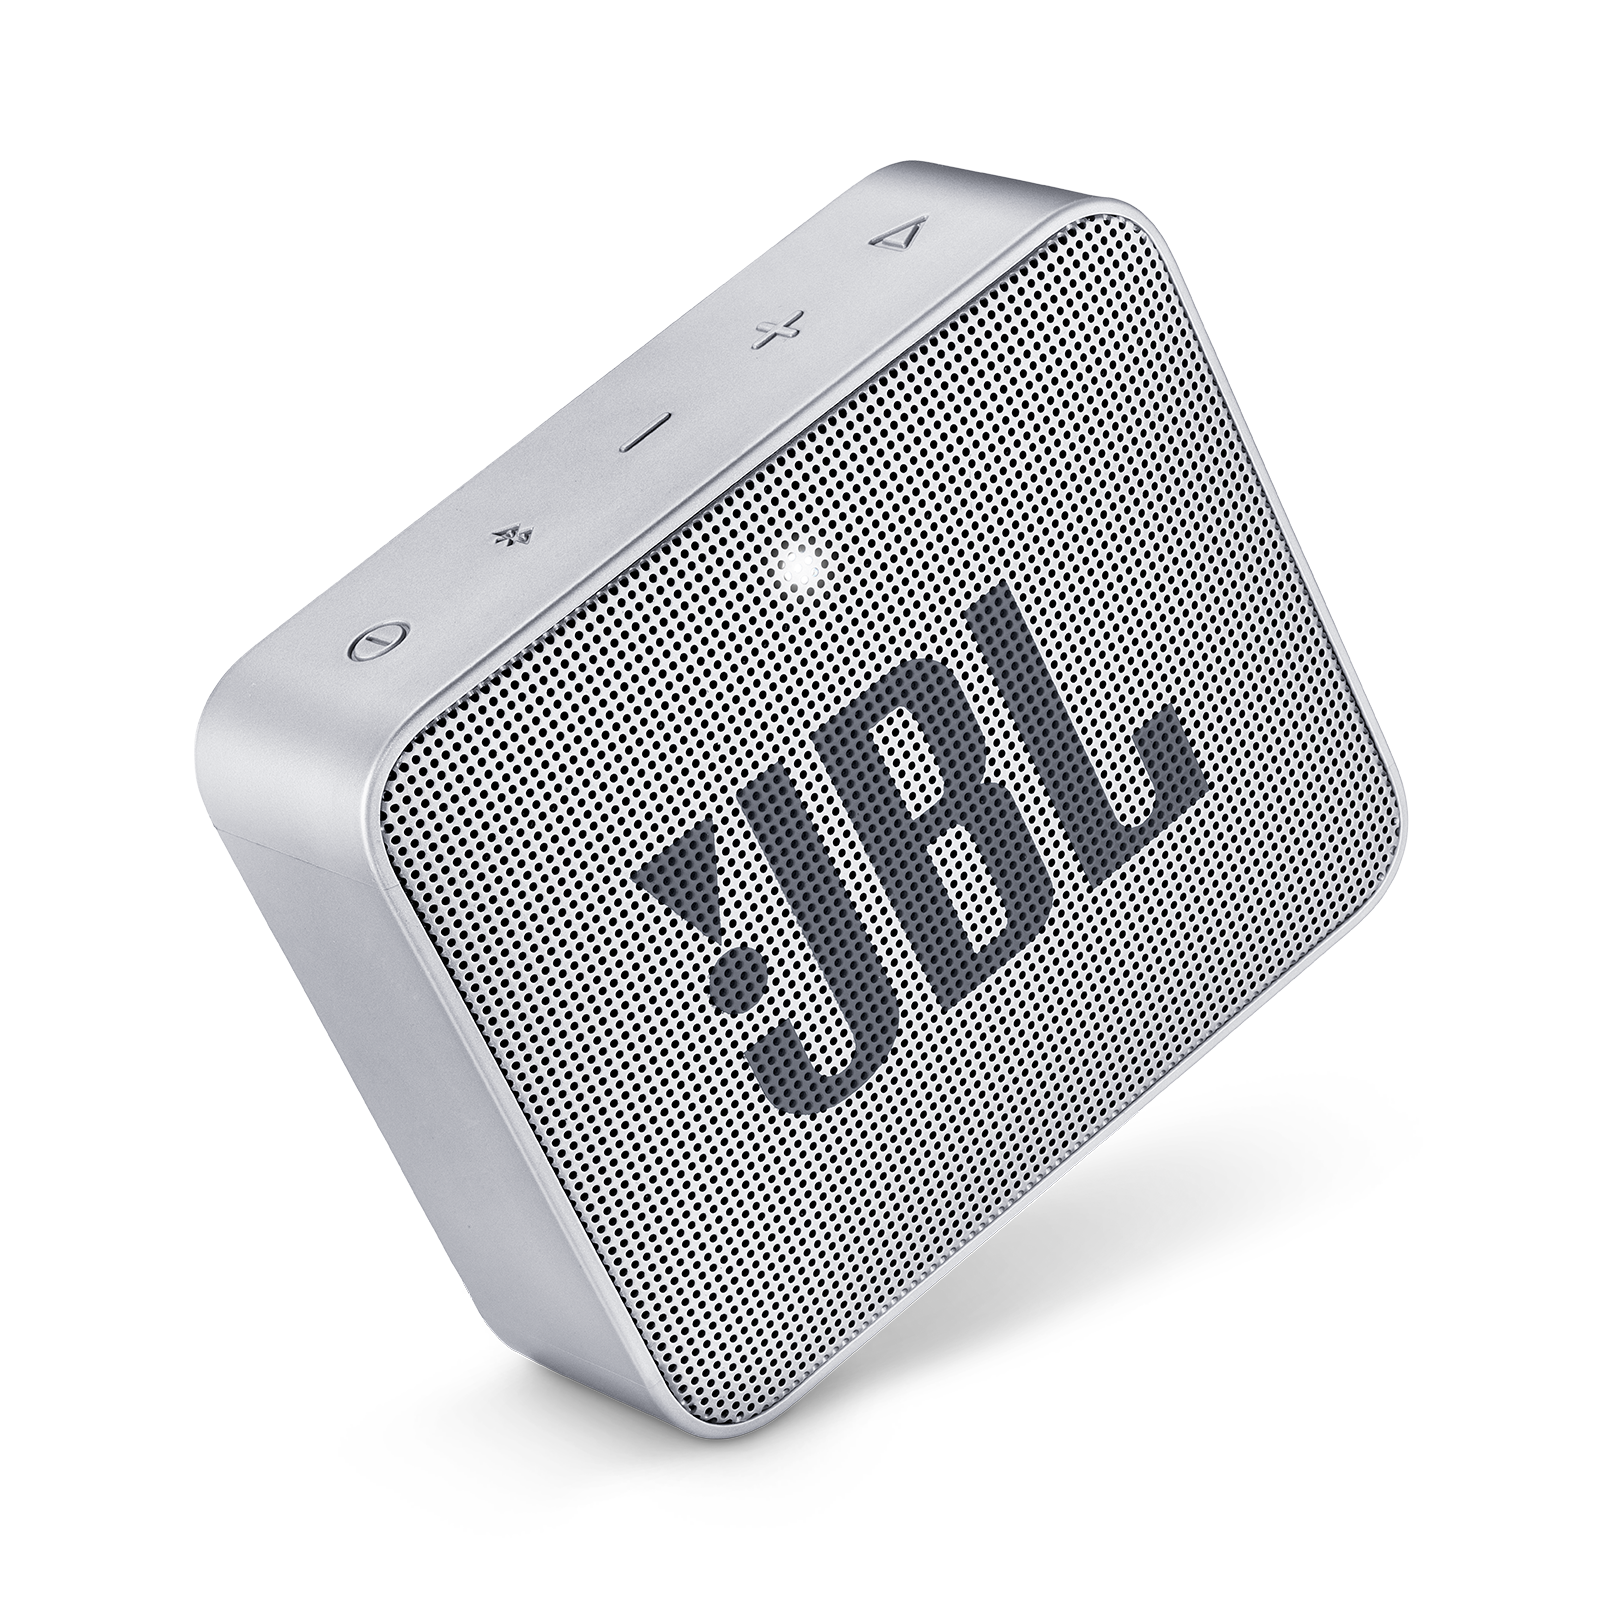 JBL GO2 Waterproof Ultra Portable Bluetooth Speaker beige